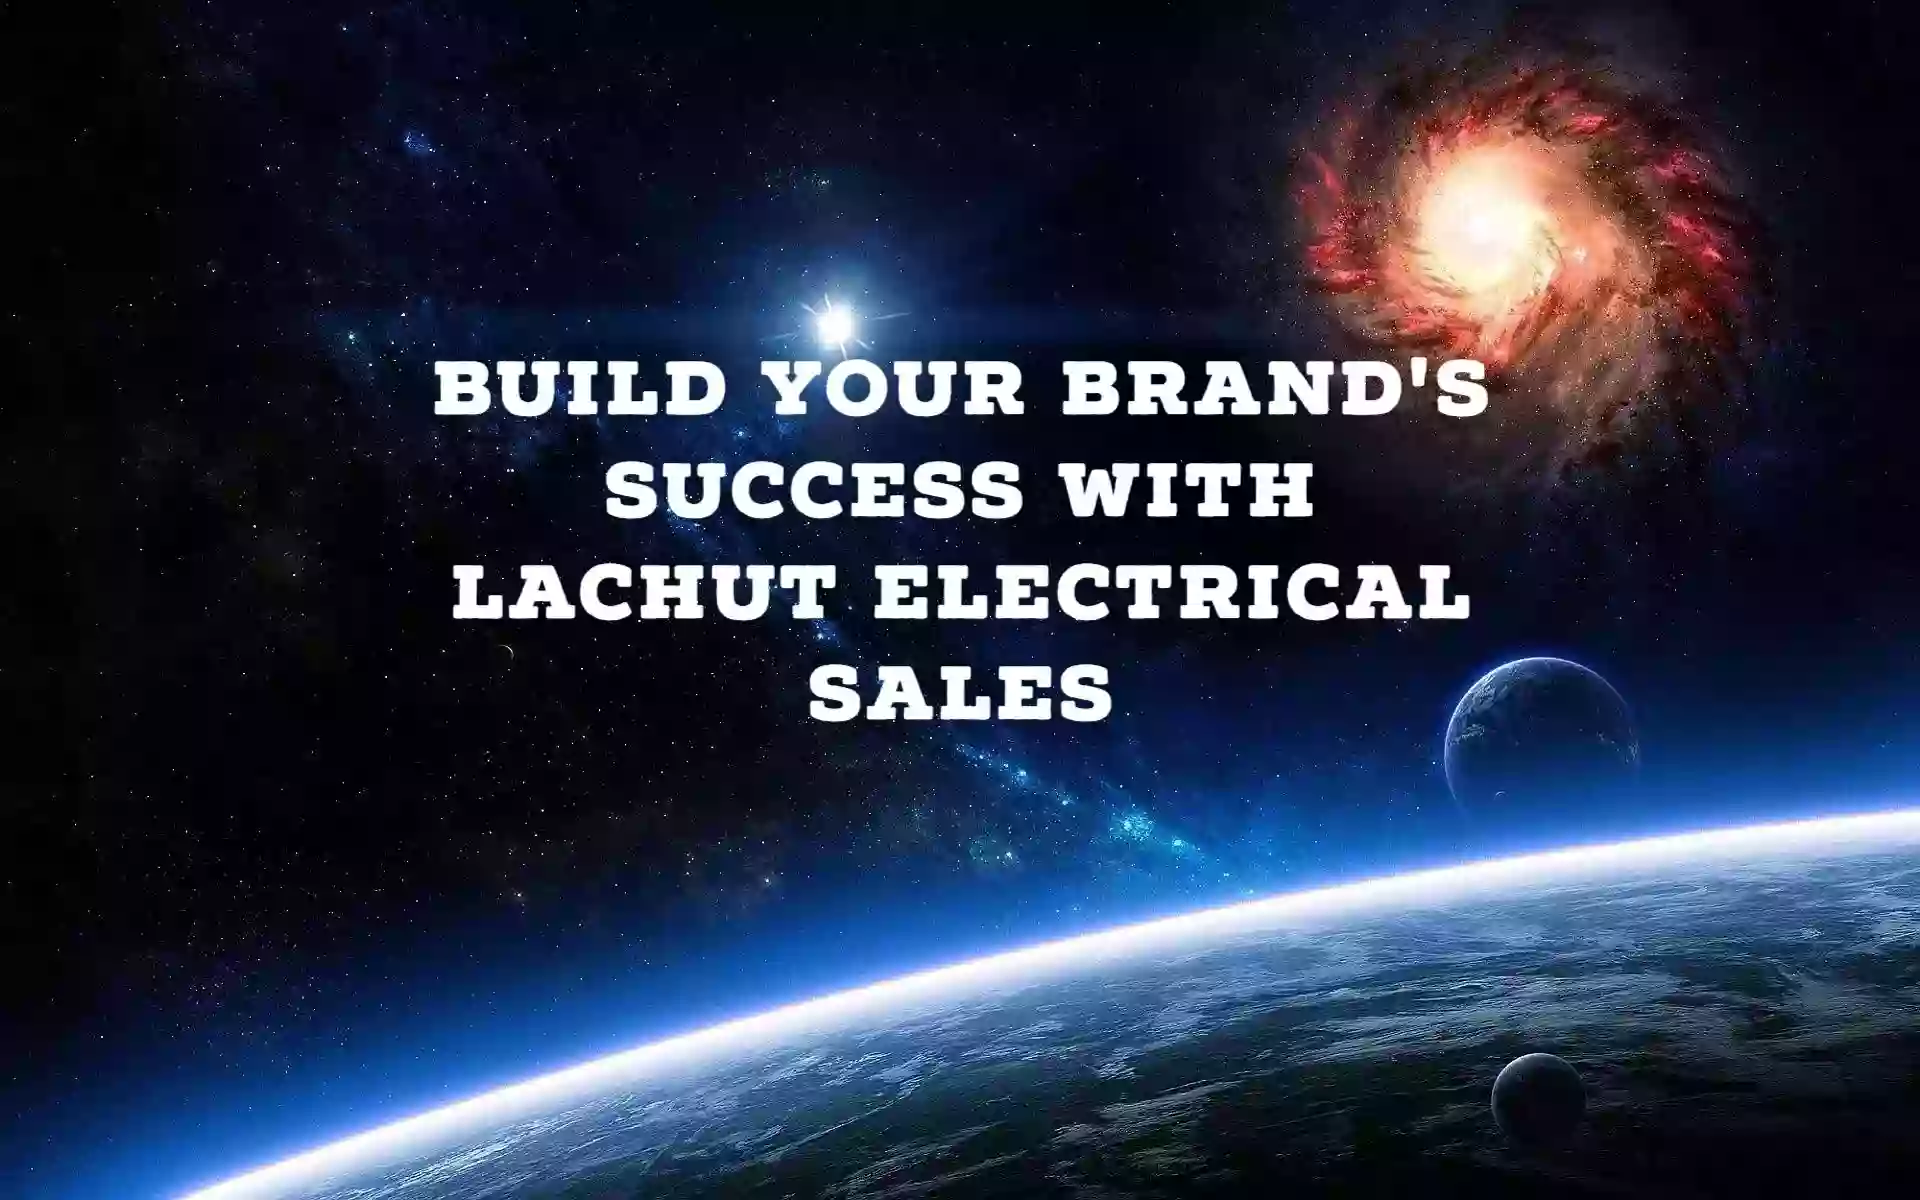 Lachut Electrical Sales Inc